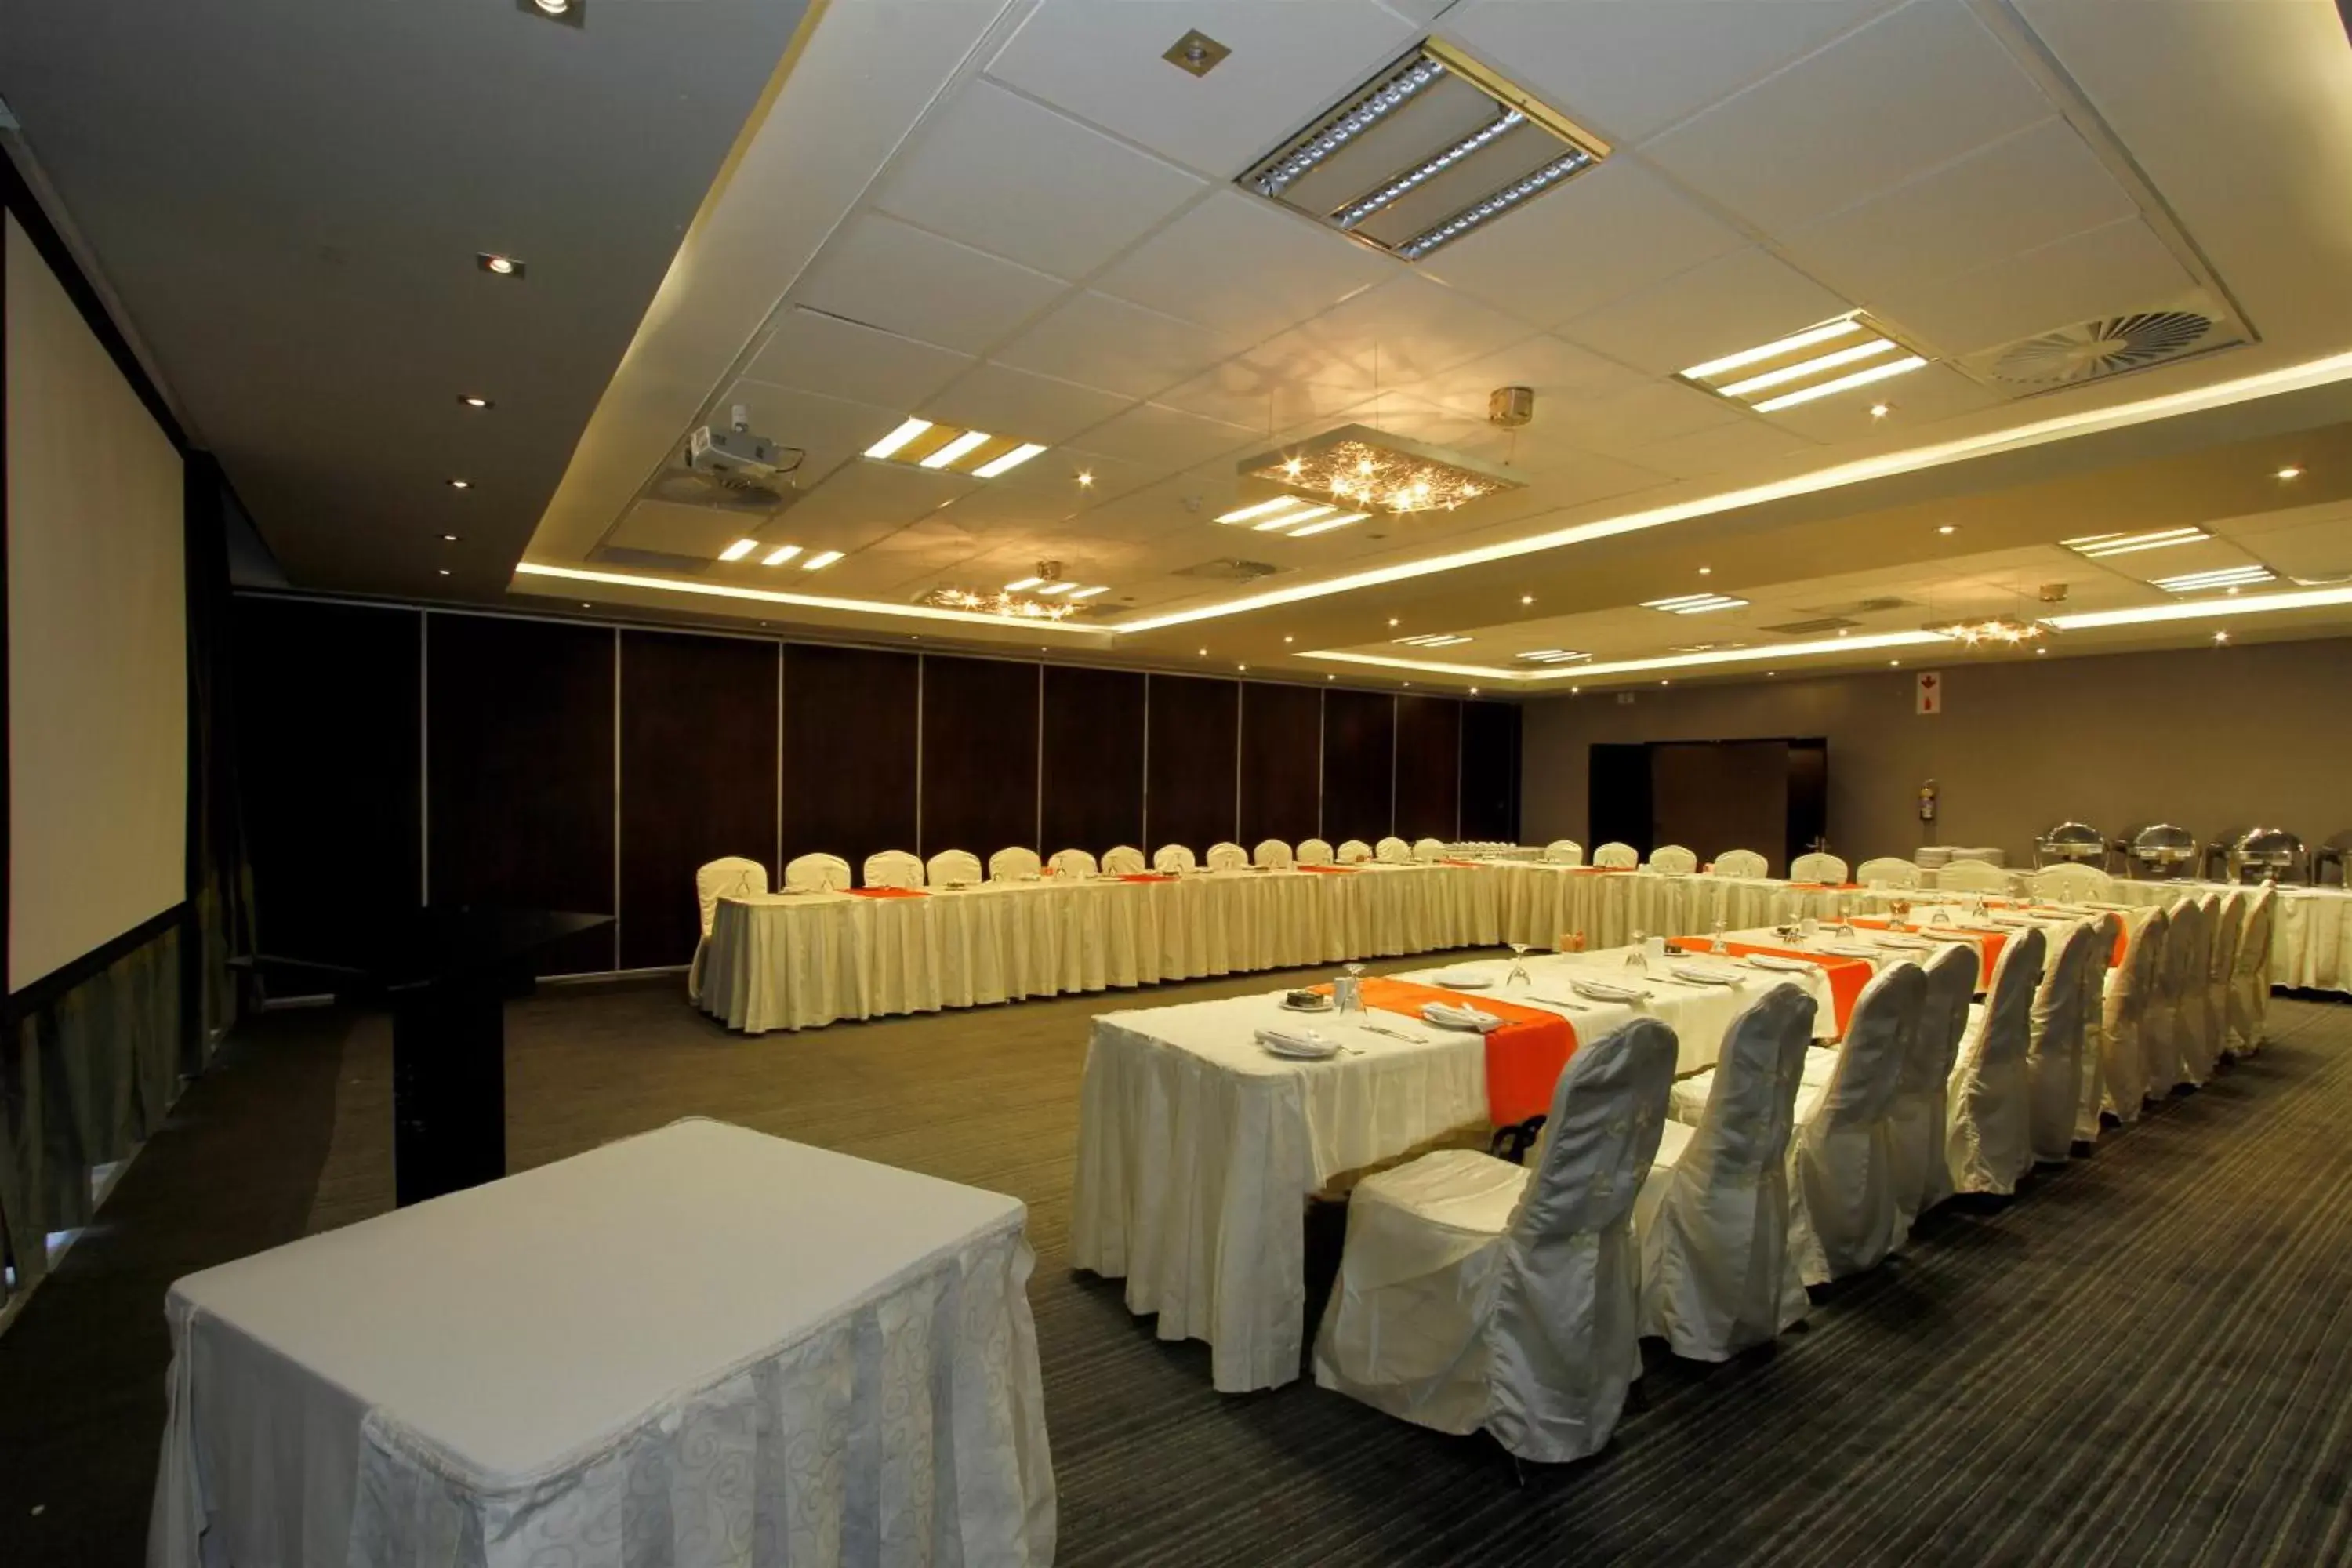 Banquet/Function facilities, Banquet Facilities in Coastlands Musgrave Hotel